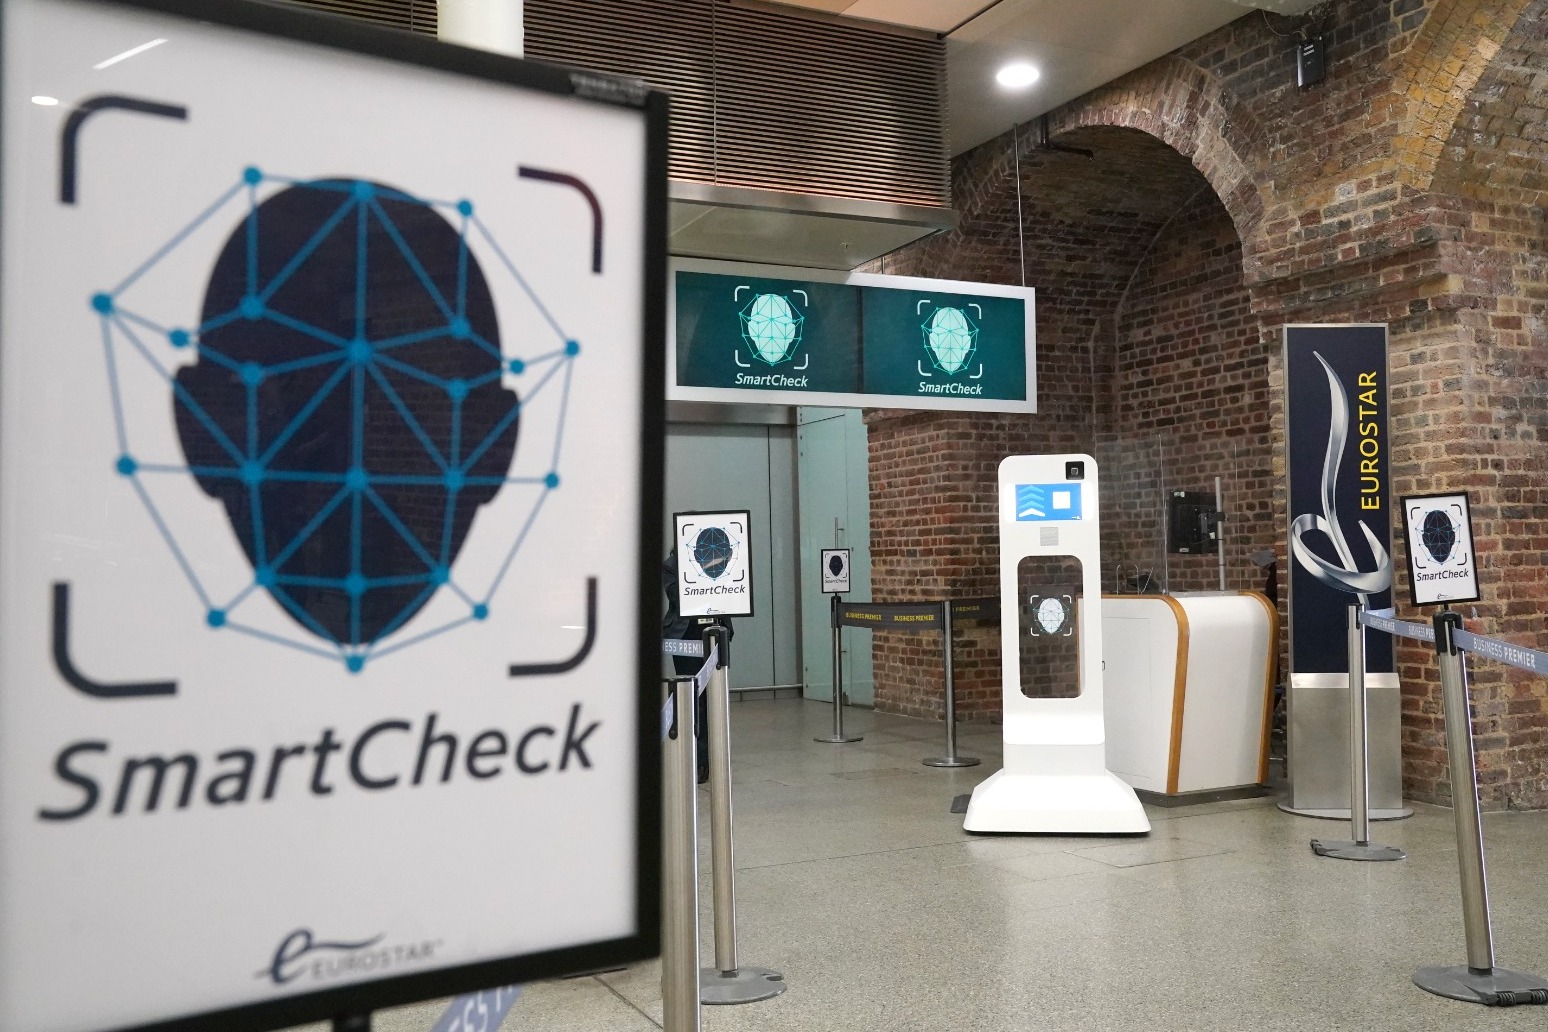 Eurostar passengers can avoid UK passport checks by having faces scanned 